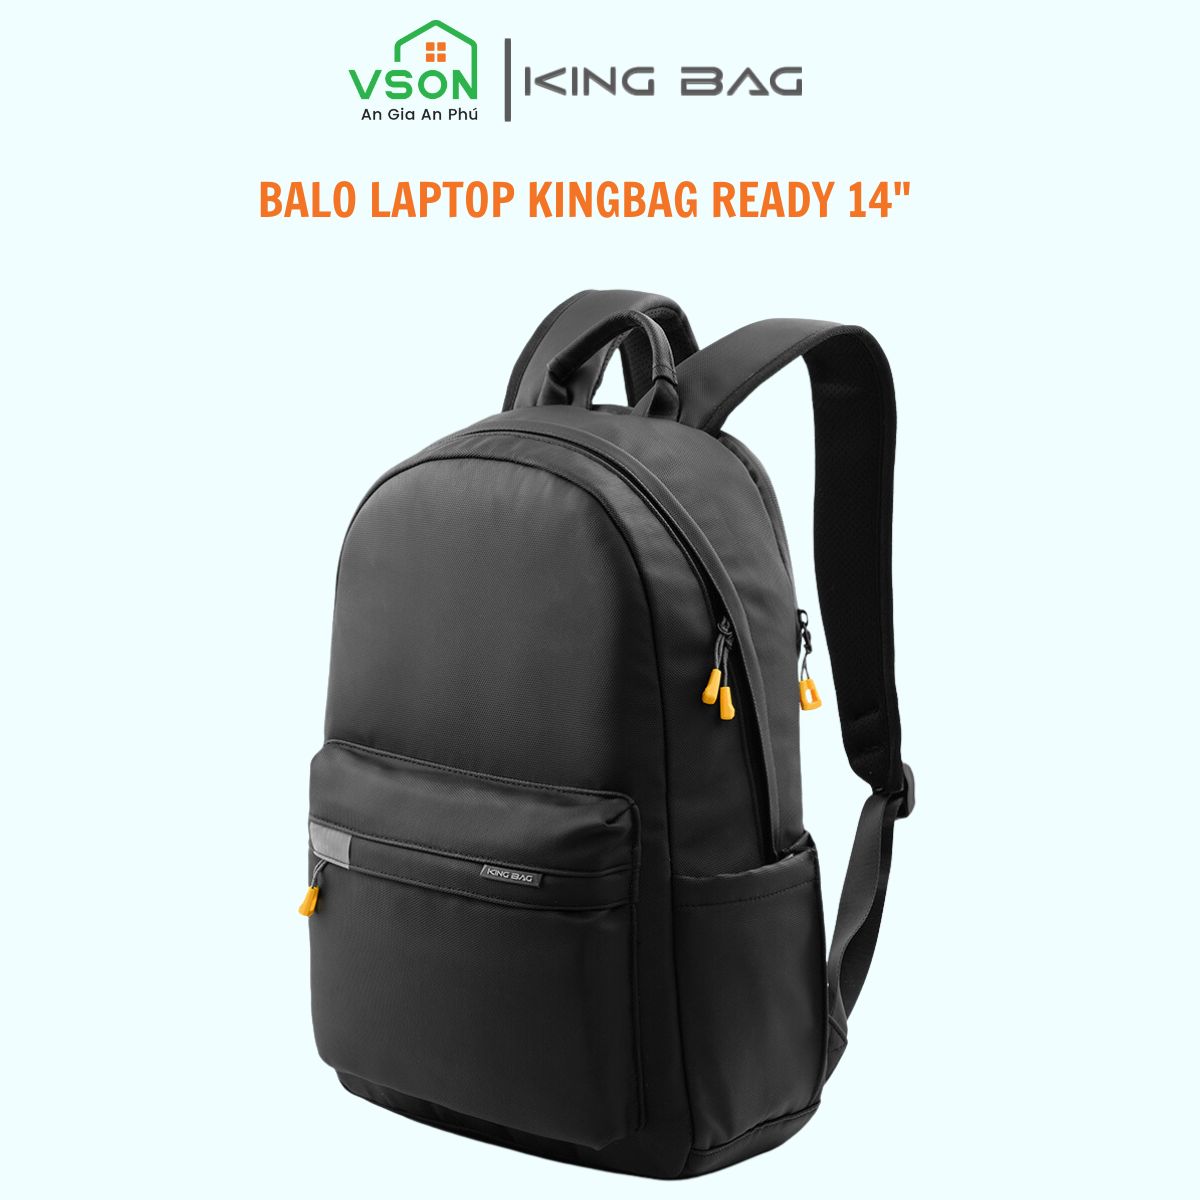 Balo laptop 14” KINGBAG READY trẻ trung, gọn nhẹ, vải trượt nước, màu đen - Hàng chính hãng